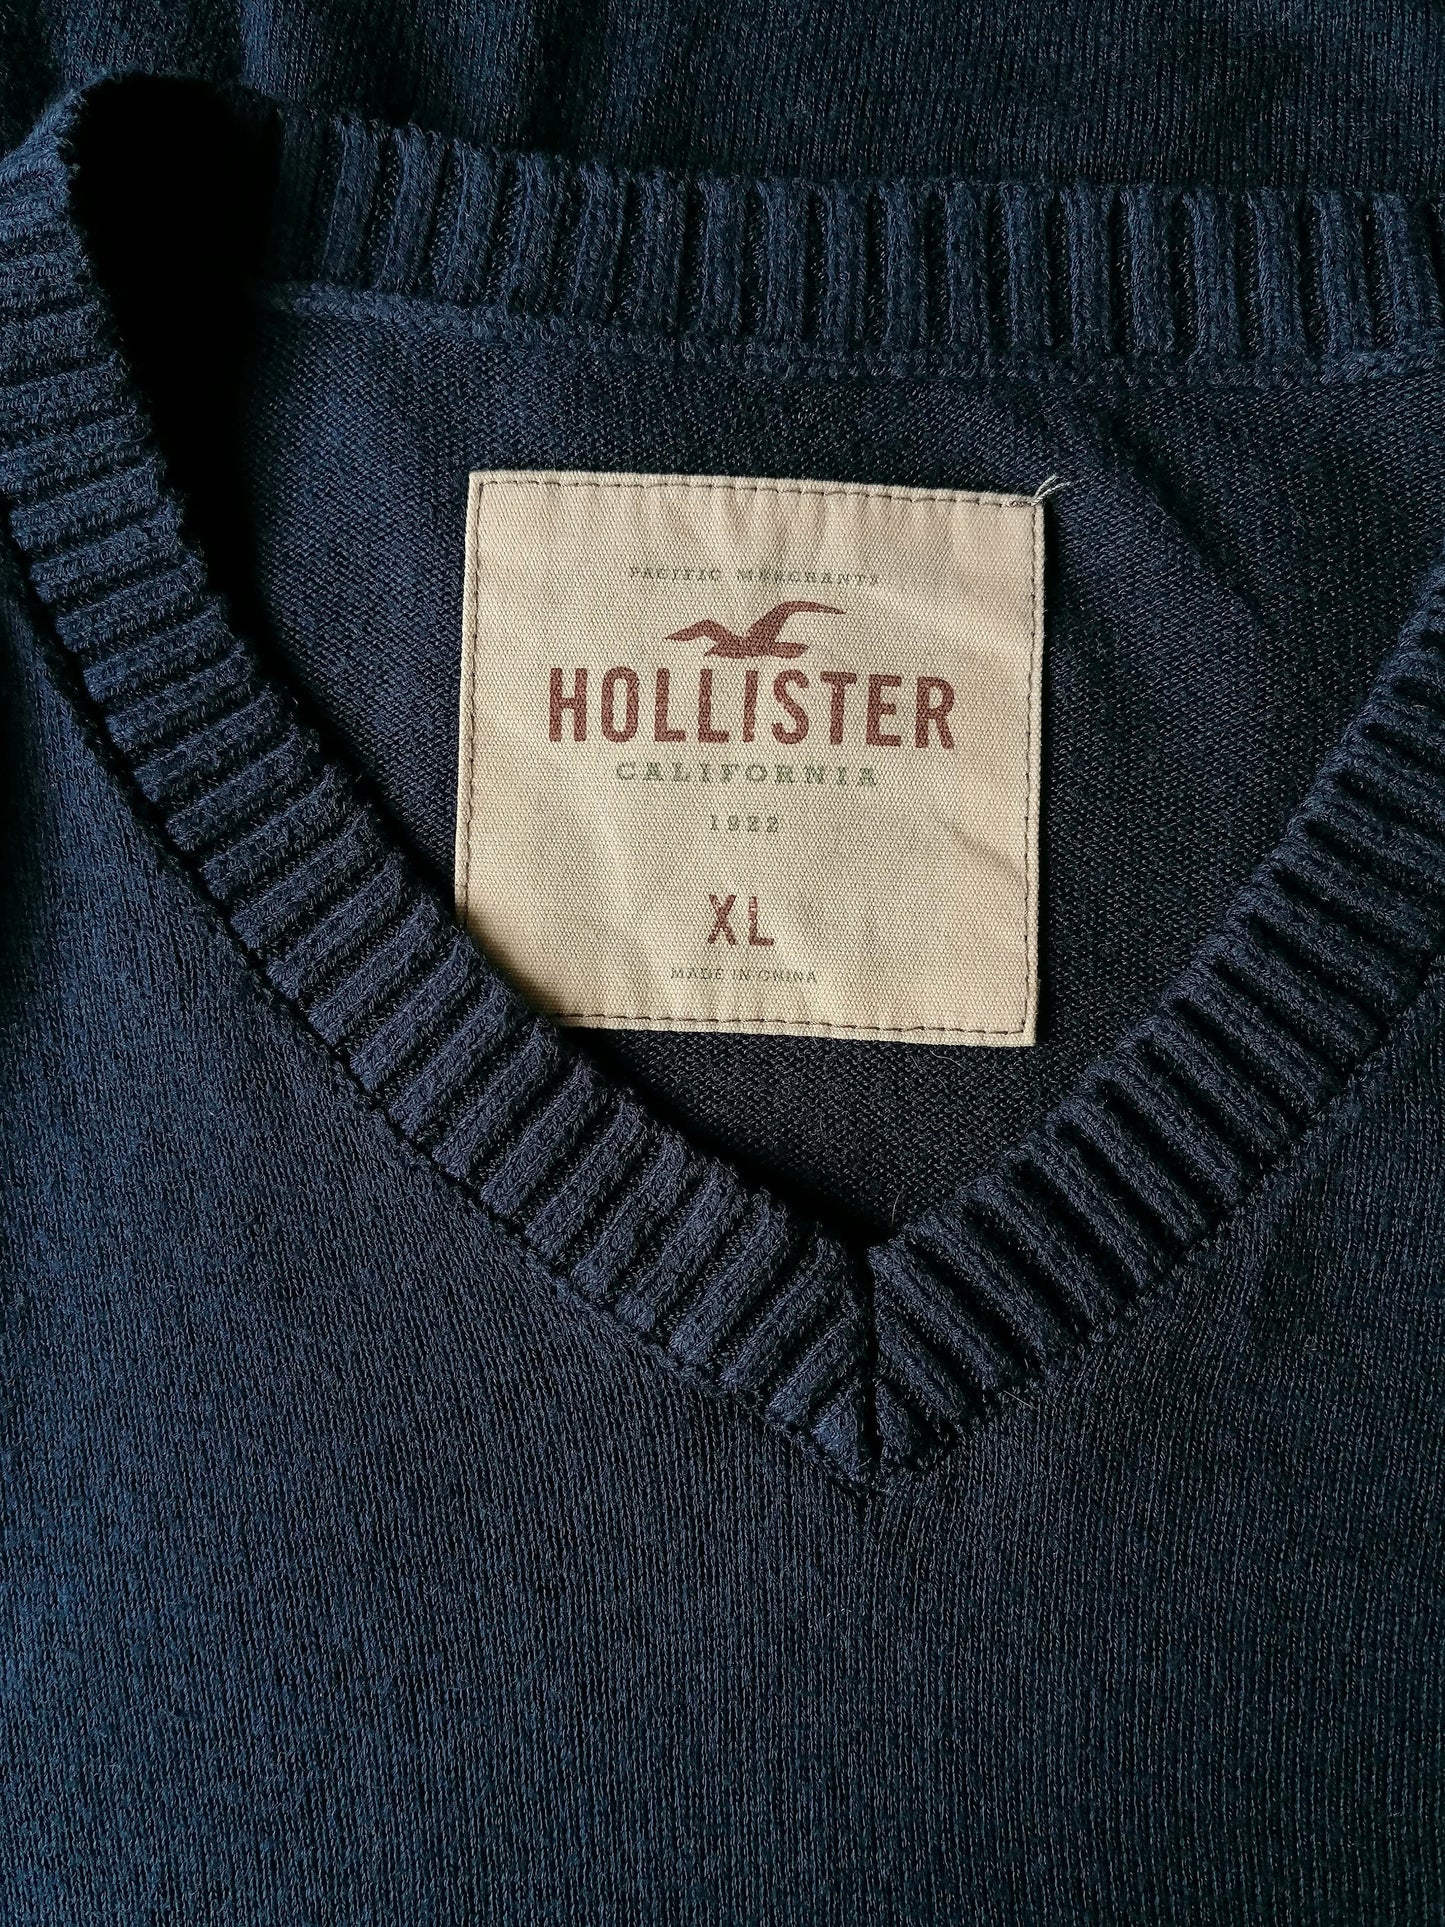 Suéter Hollister con cuello en V. Color azul oscuro. Tamaño xl.